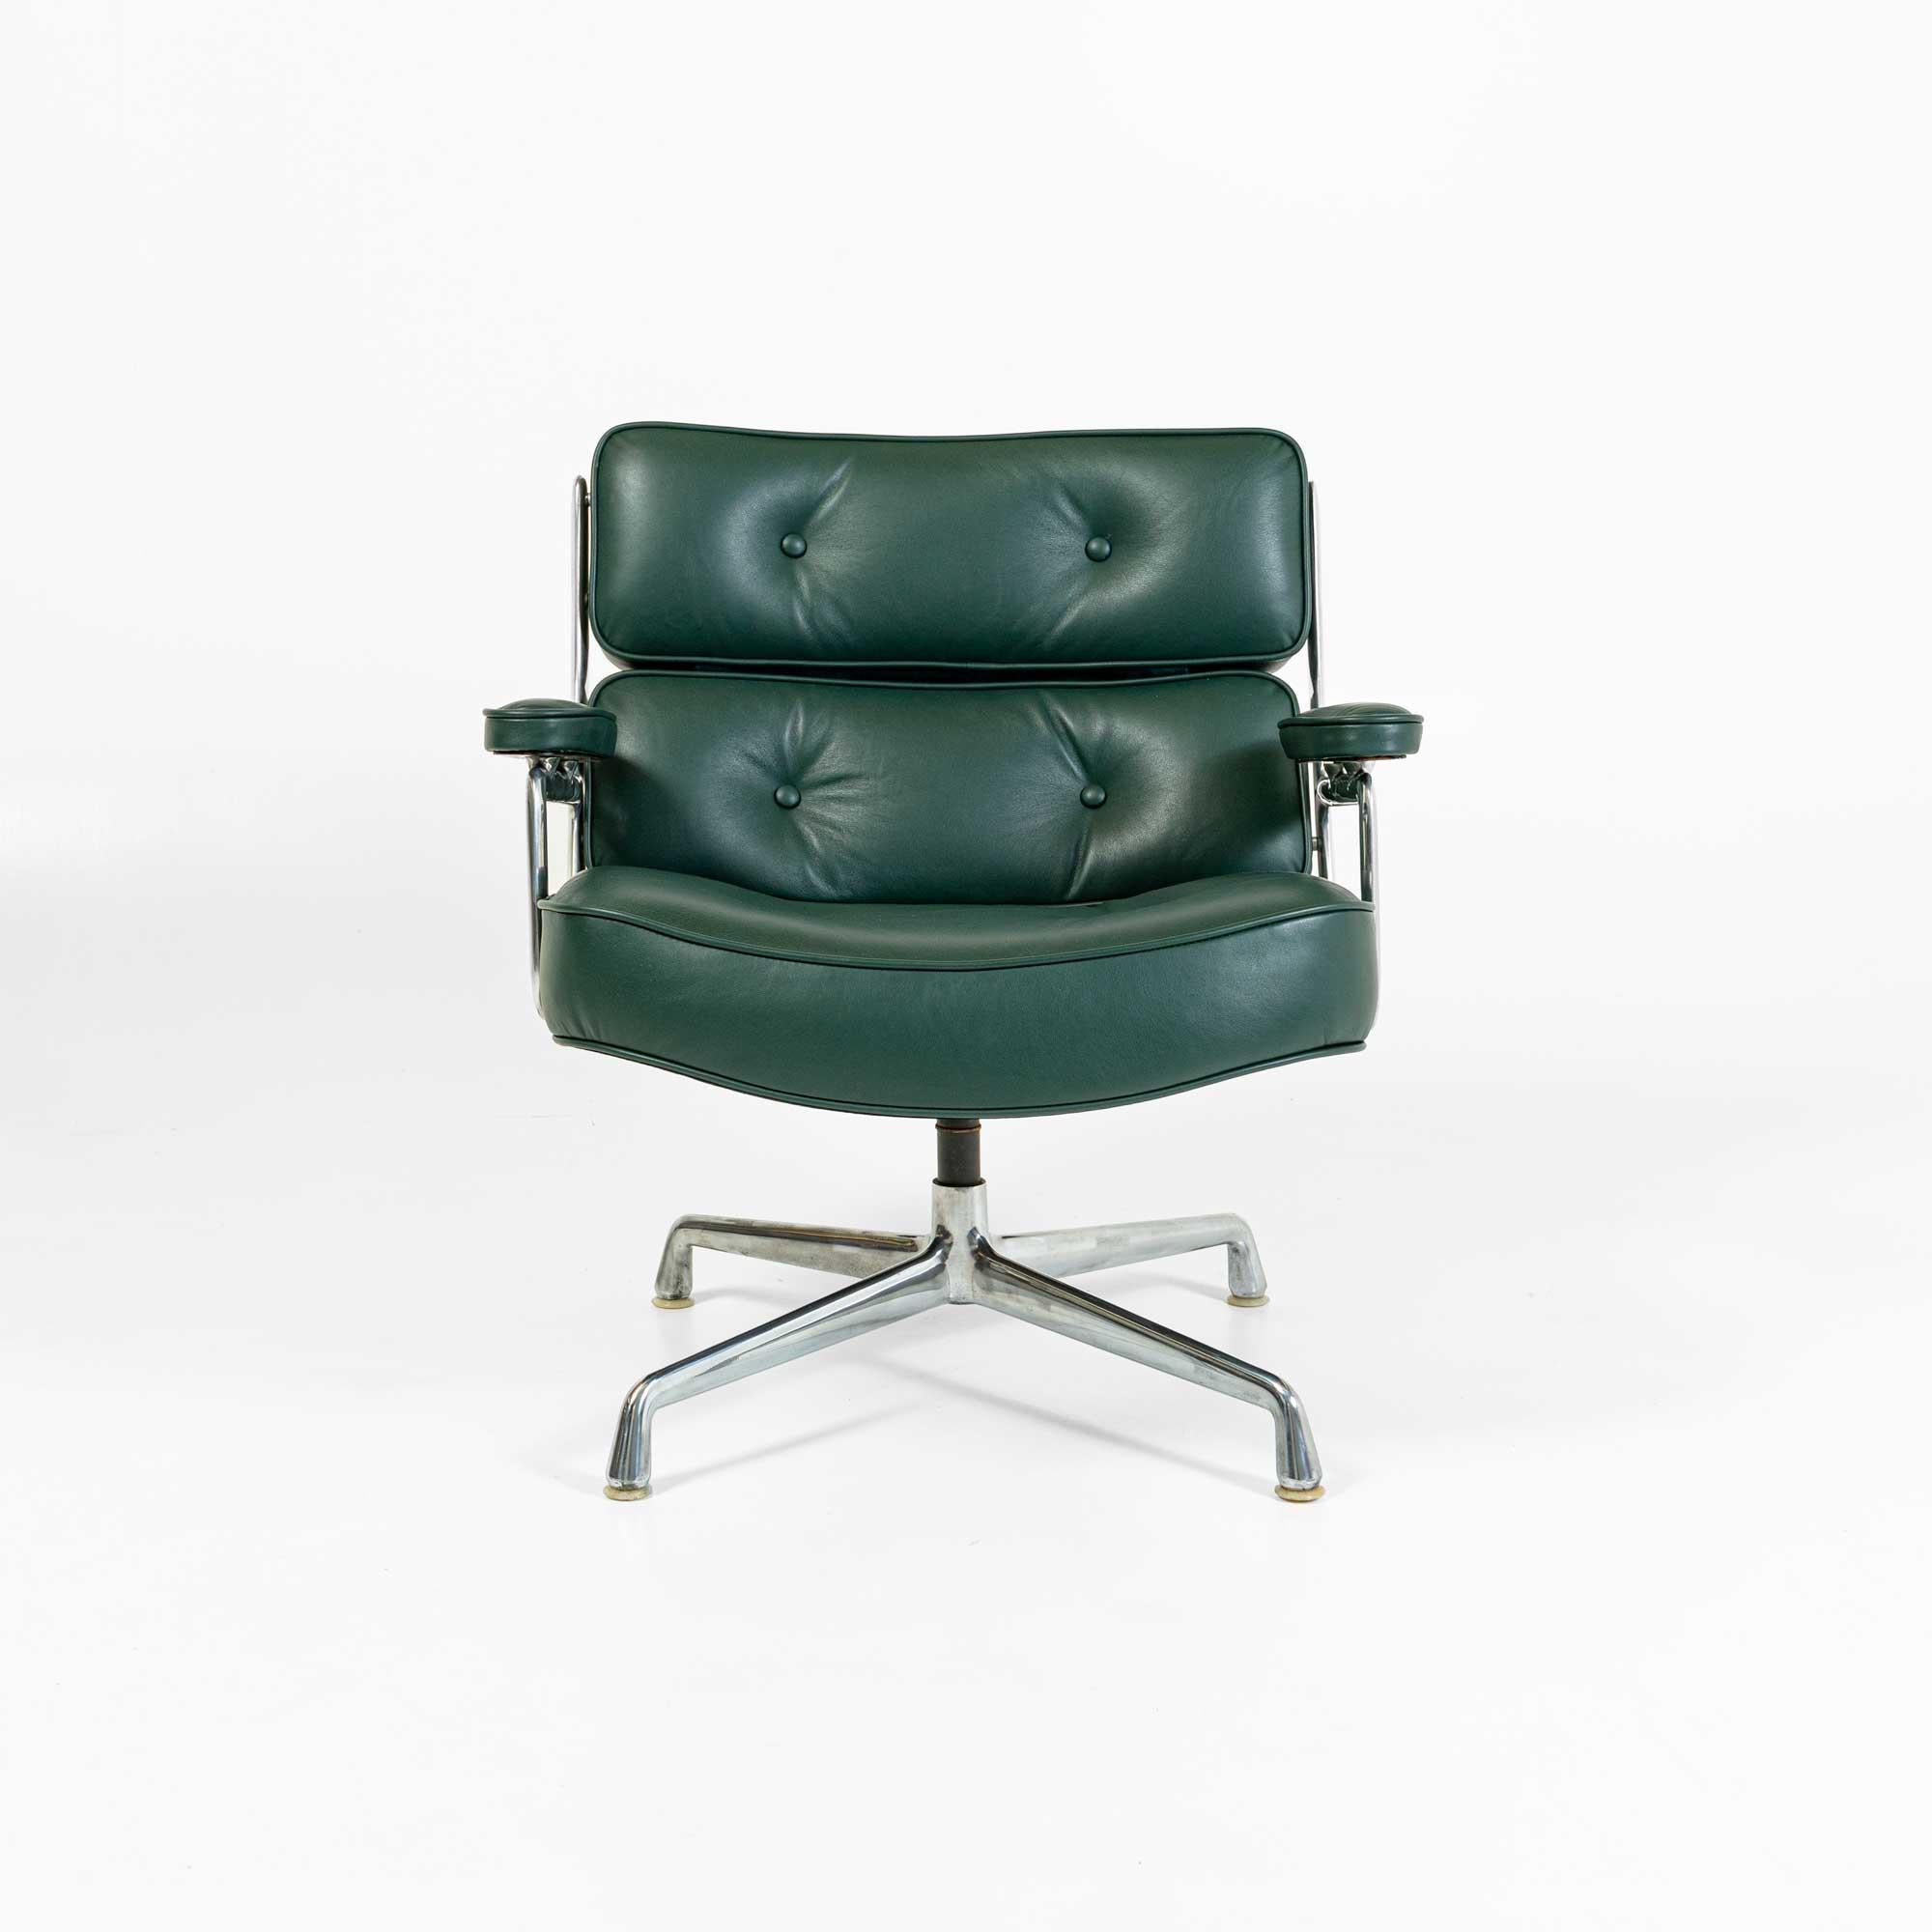 Une chaise Eames timelife Lobby chair, modèle ES105, nouvellement restaurée et retapissée en cuir aniline vert minuit. Prix individuel, nous en avons actuellement 2.

La chaise Eames Timelife Lobby Chair est l'adaptation des 